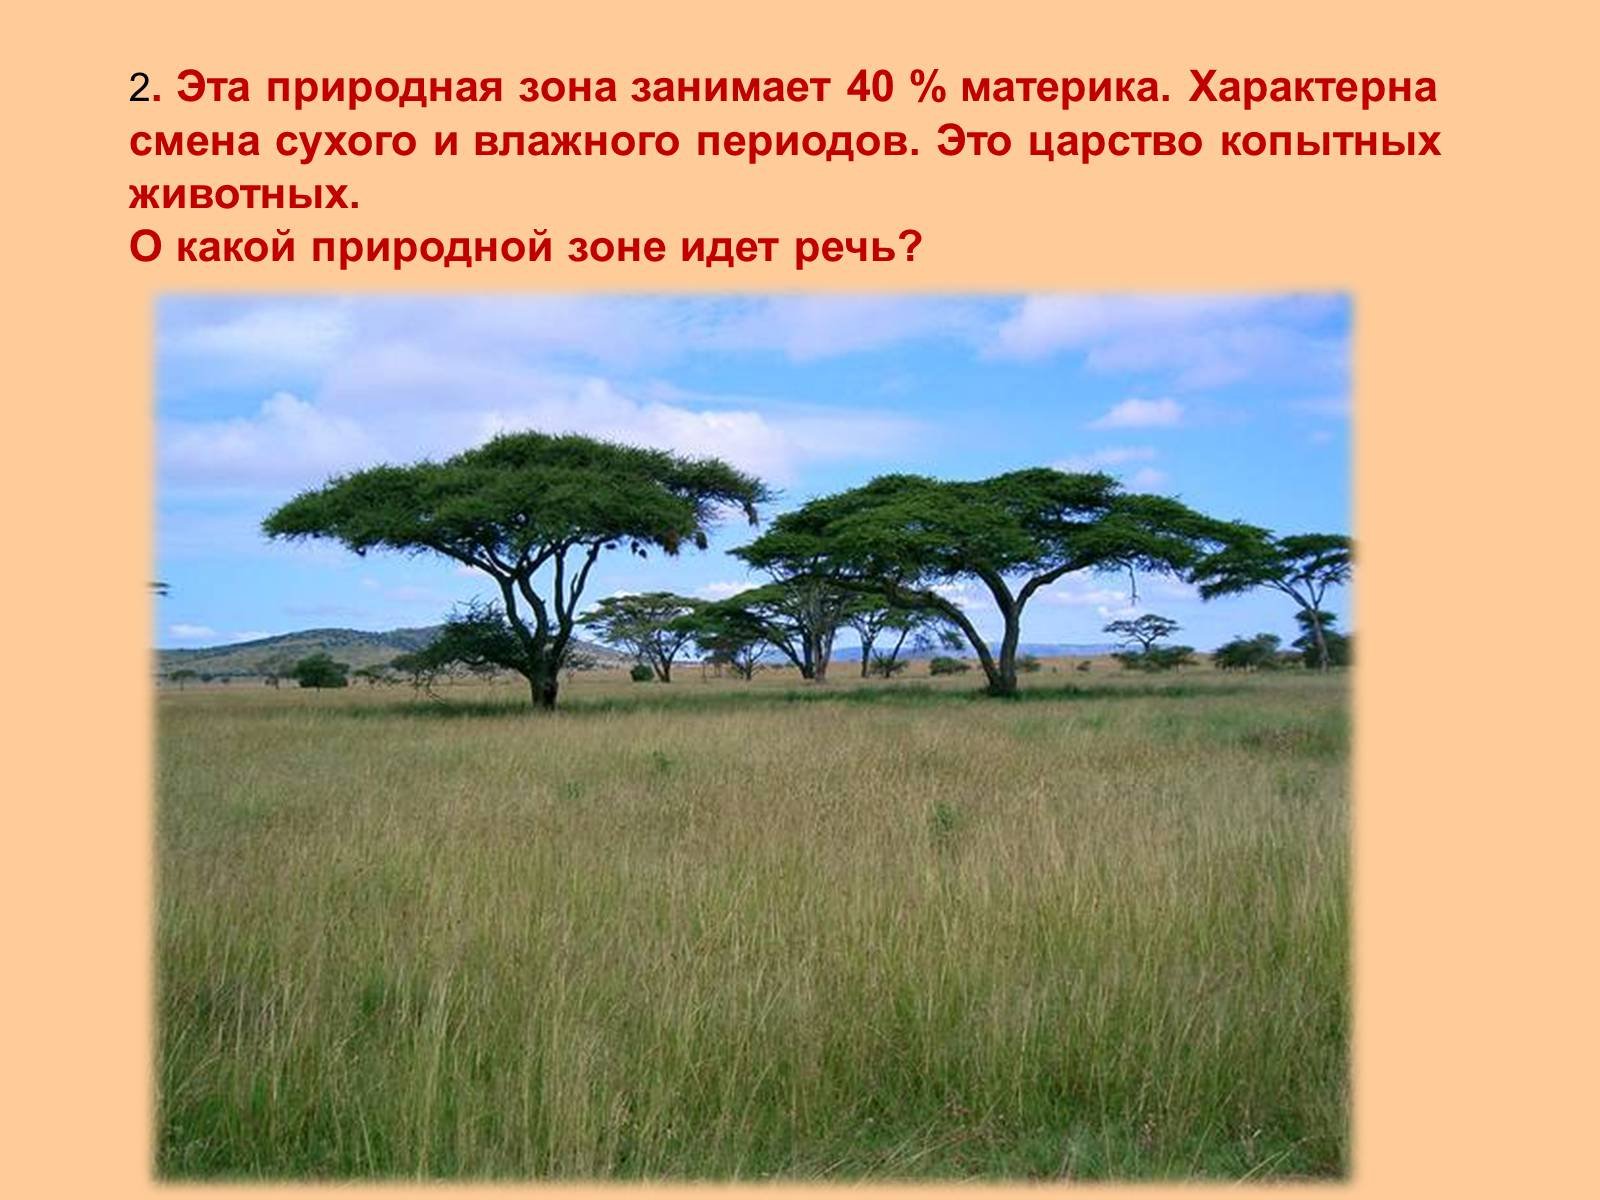 Особенности растительности саванны и редколесья. Зонтичная Акация природная зона. Растения саванны и редколесья Африки. Саванна это природная зона. Зона саванн в Африке.